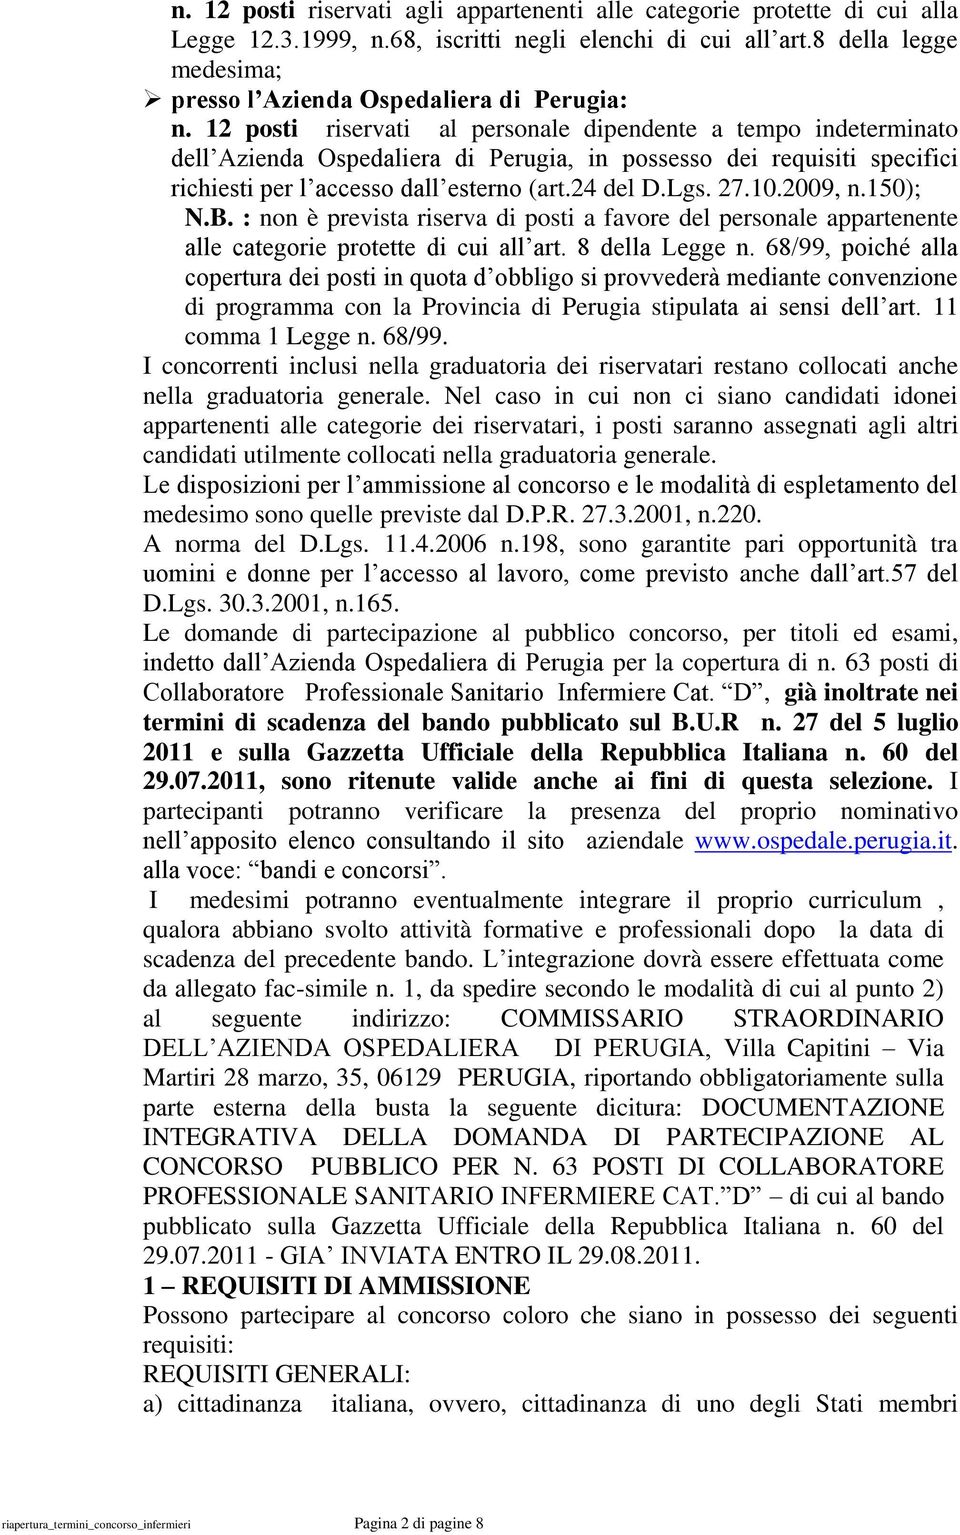 12 posti riservati al personale dipendente a tempo indeterminato dell Azienda Ospedaliera di Perugia, in possesso dei requisiti specifici richiesti per l accesso dall esterno (art.24 del D.Lgs. 27.10.